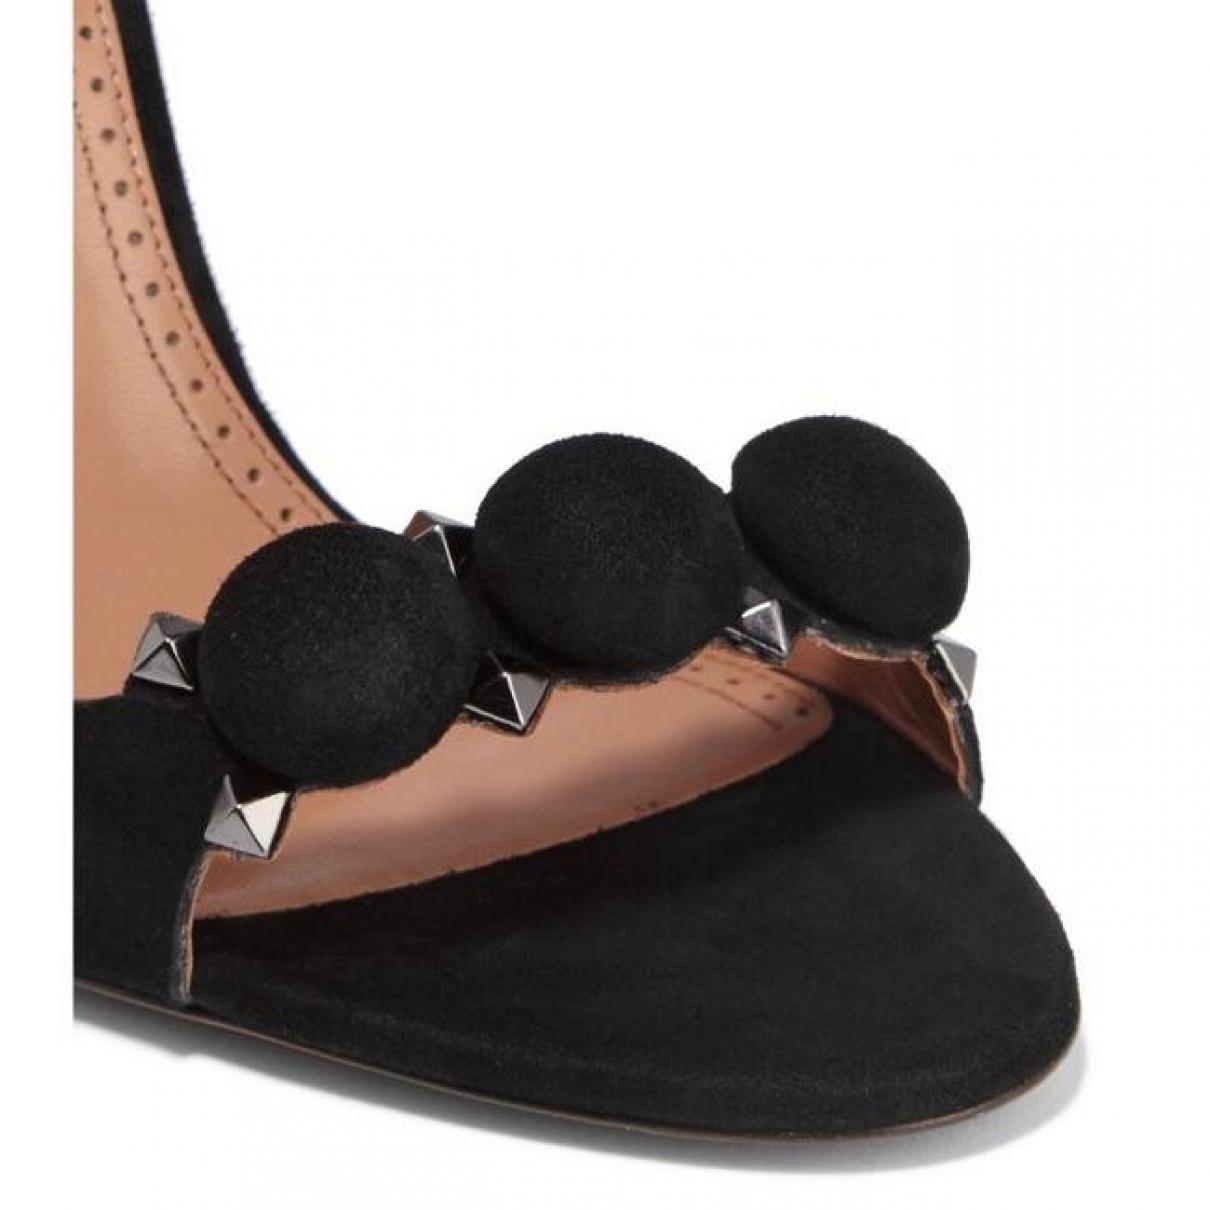 Leather heels - 5